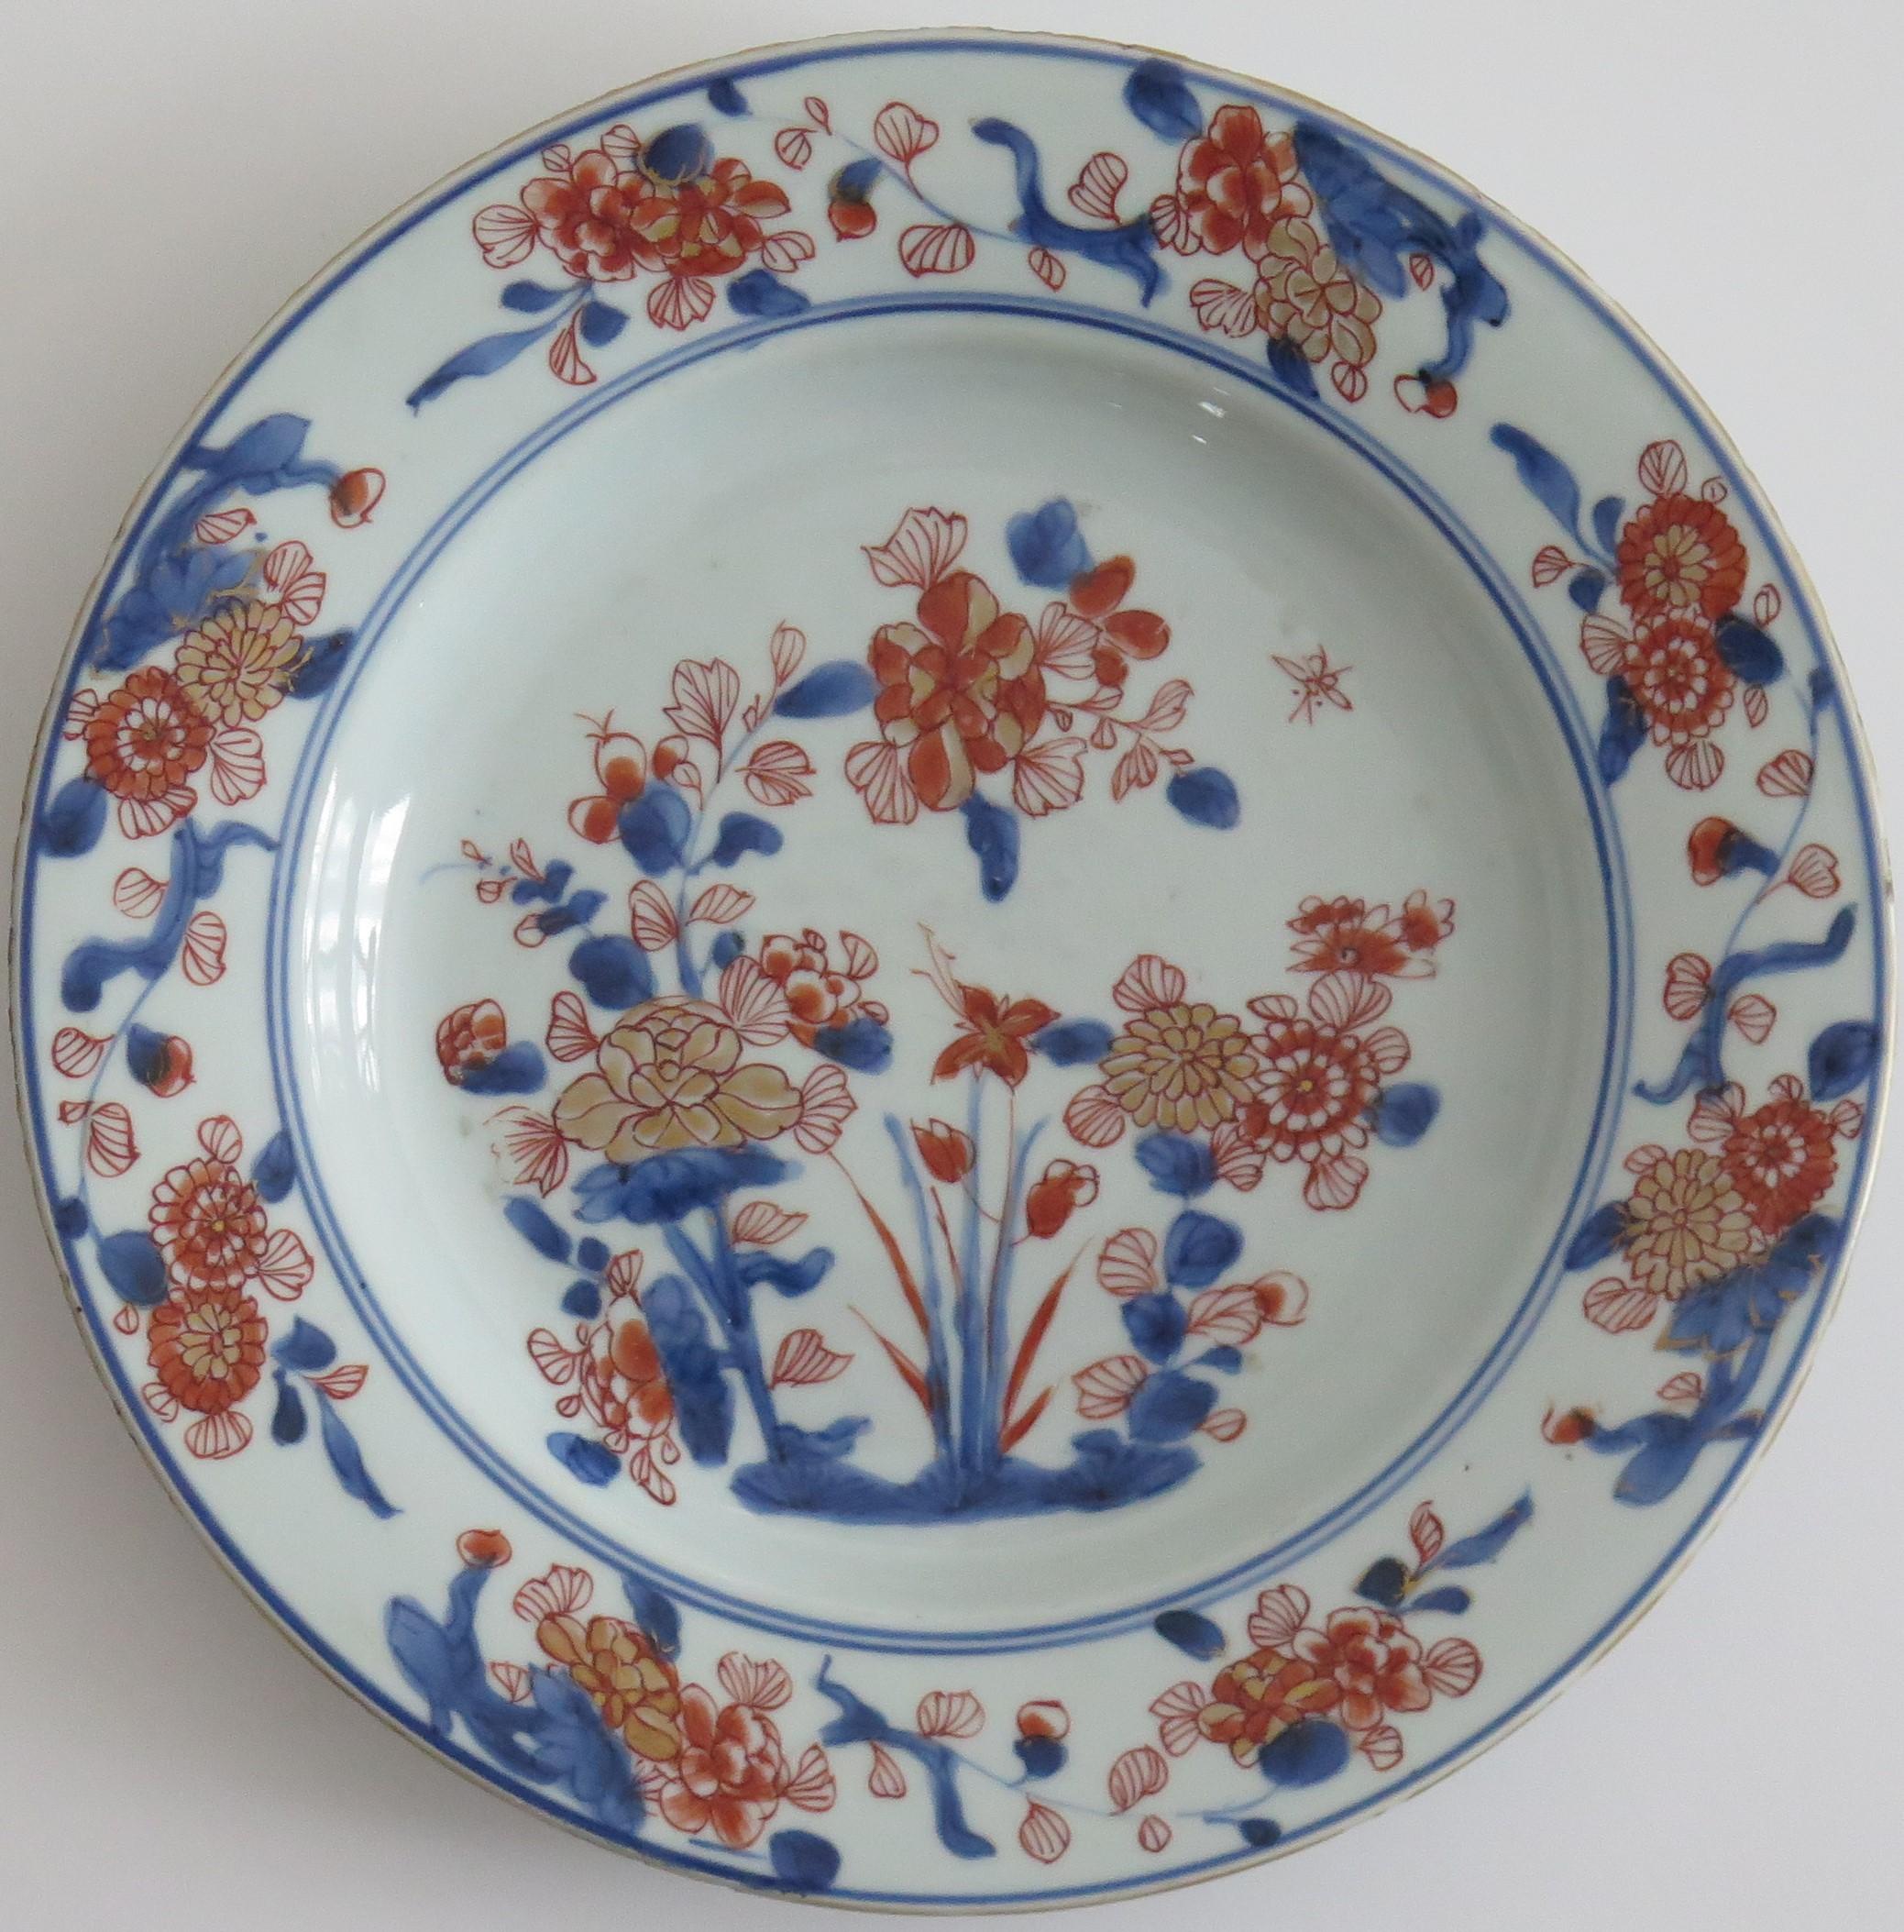 Dies ist eine wunderschön handbemalte chinesische Export-Porzellan-Teller oder Schüssel aus der Qing, Kangxi-Periode, 1662-1722, vollständig auf den Boden mit der Kangxi-Periode Artemisia Blatt Marke innerhalb einer doppelten blauen Ring